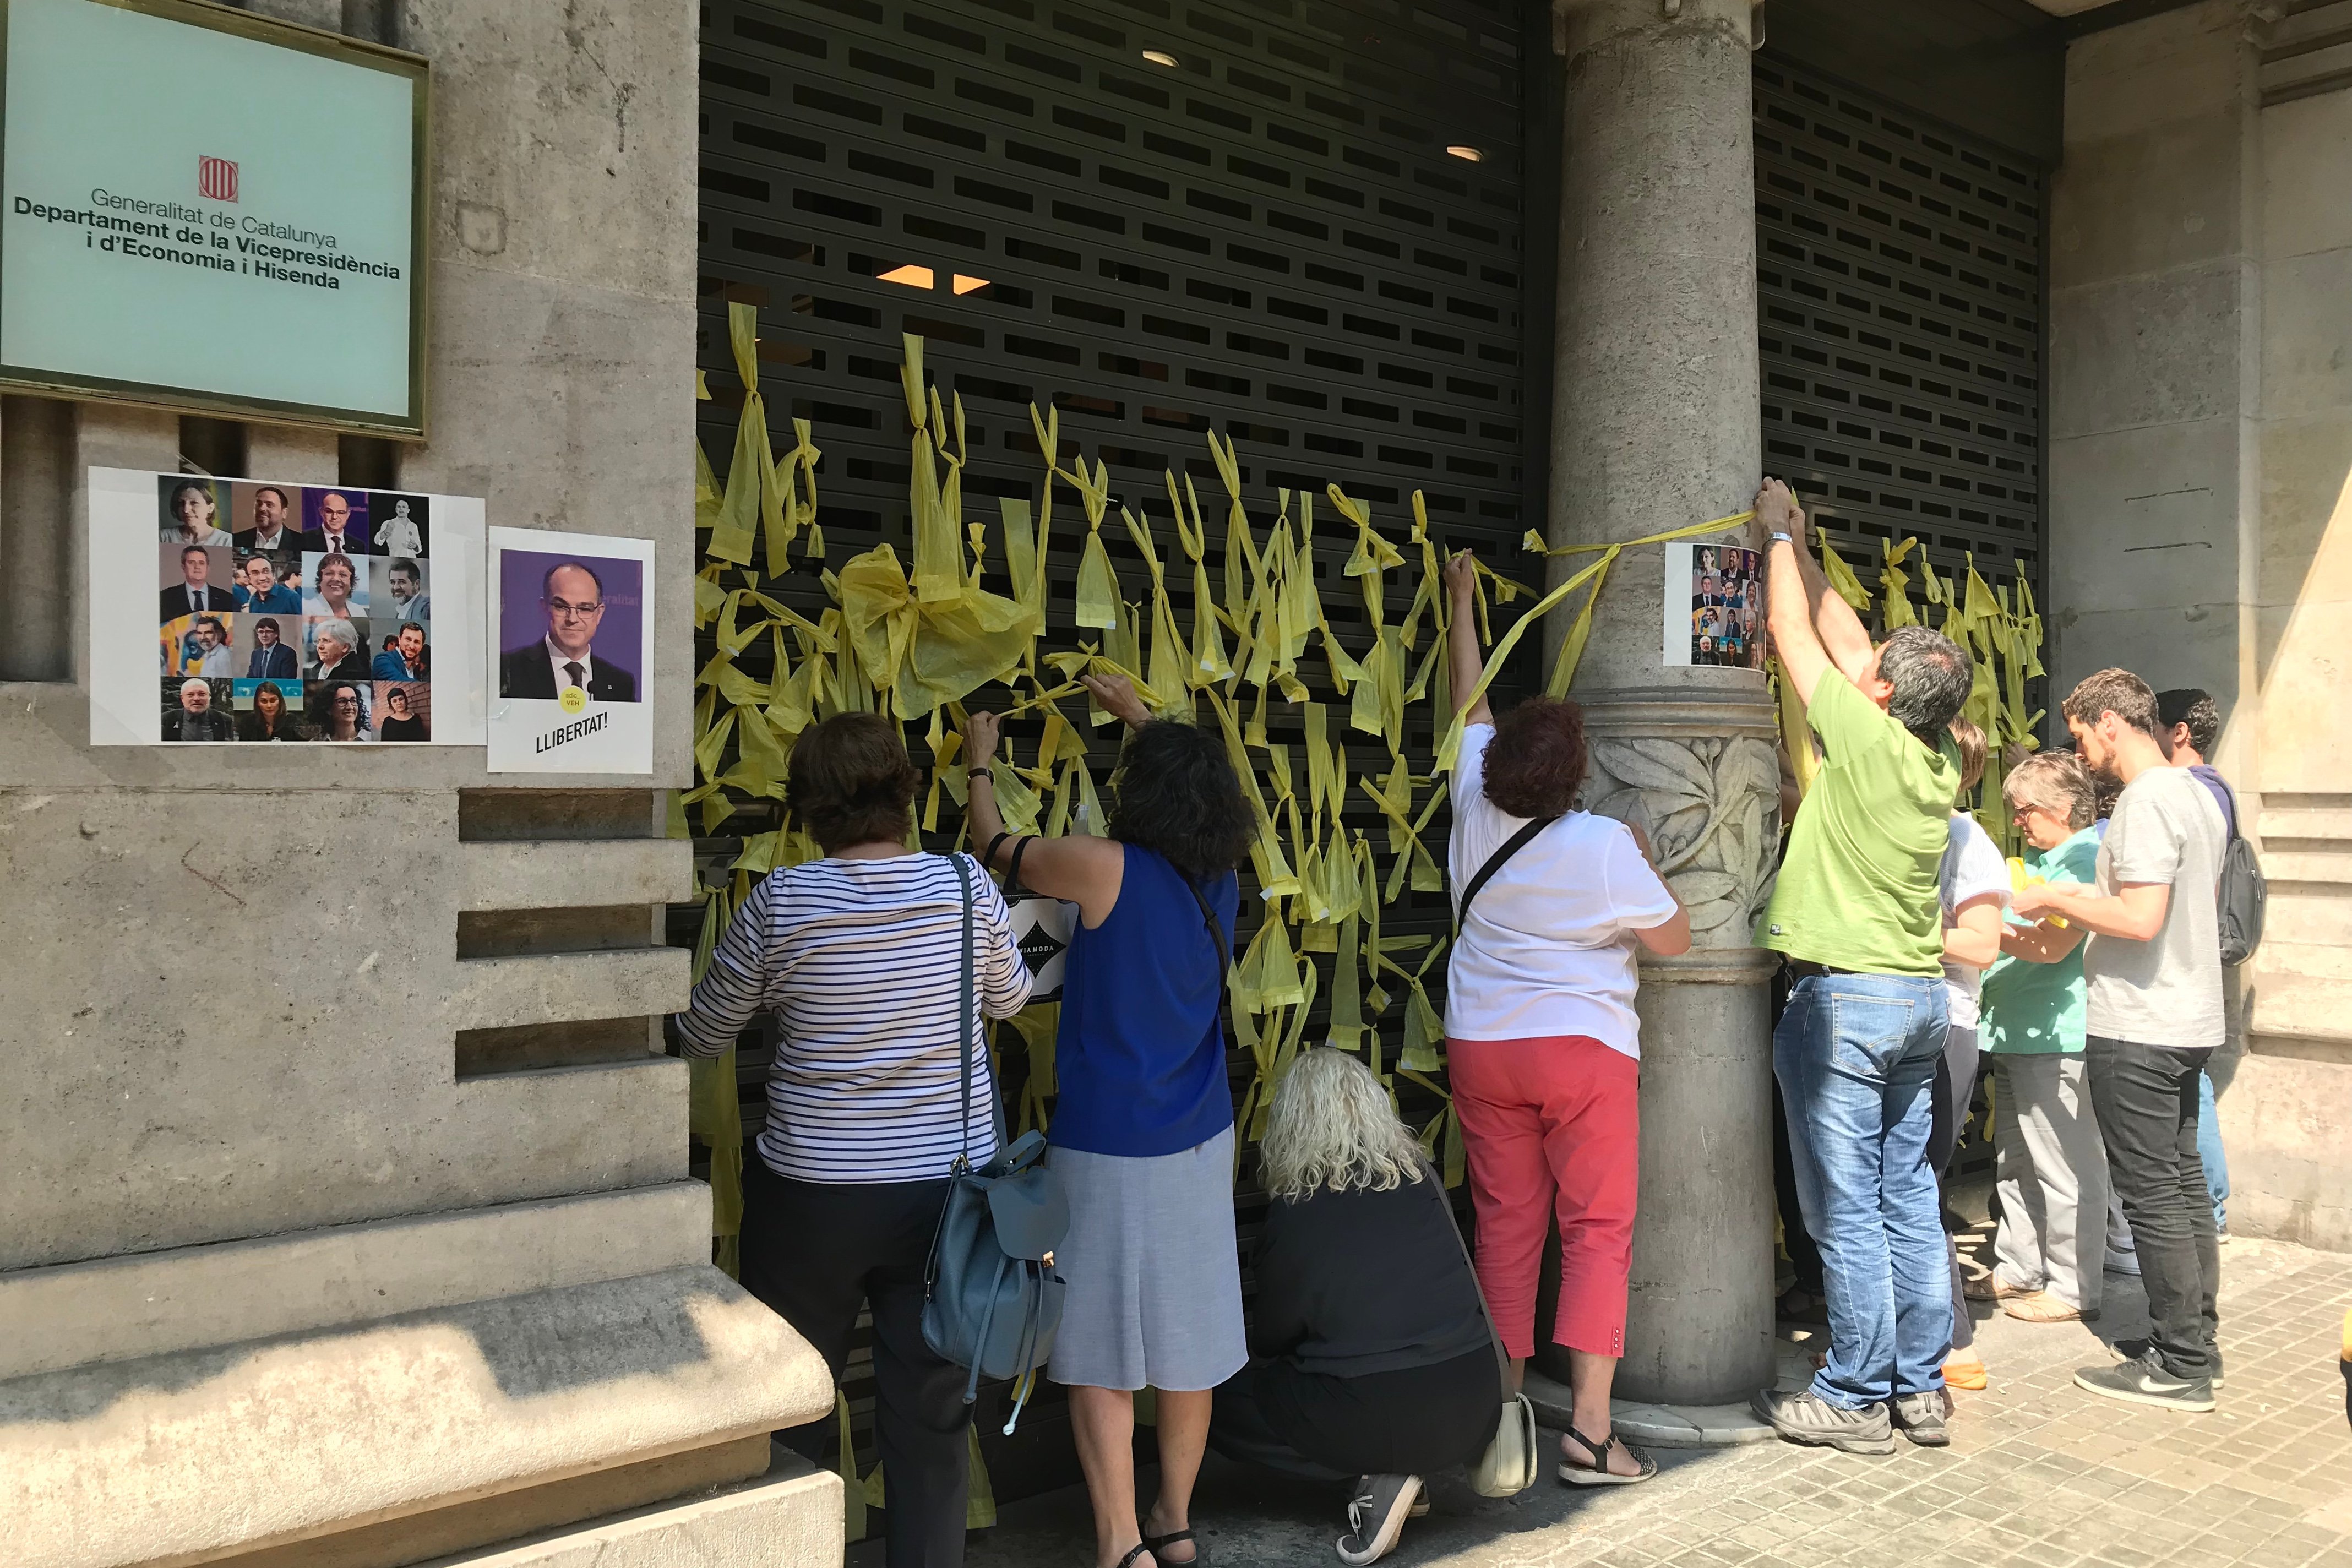 Treballadors de Vicepresidència i Economia tenyeixen de groc la façana del departament